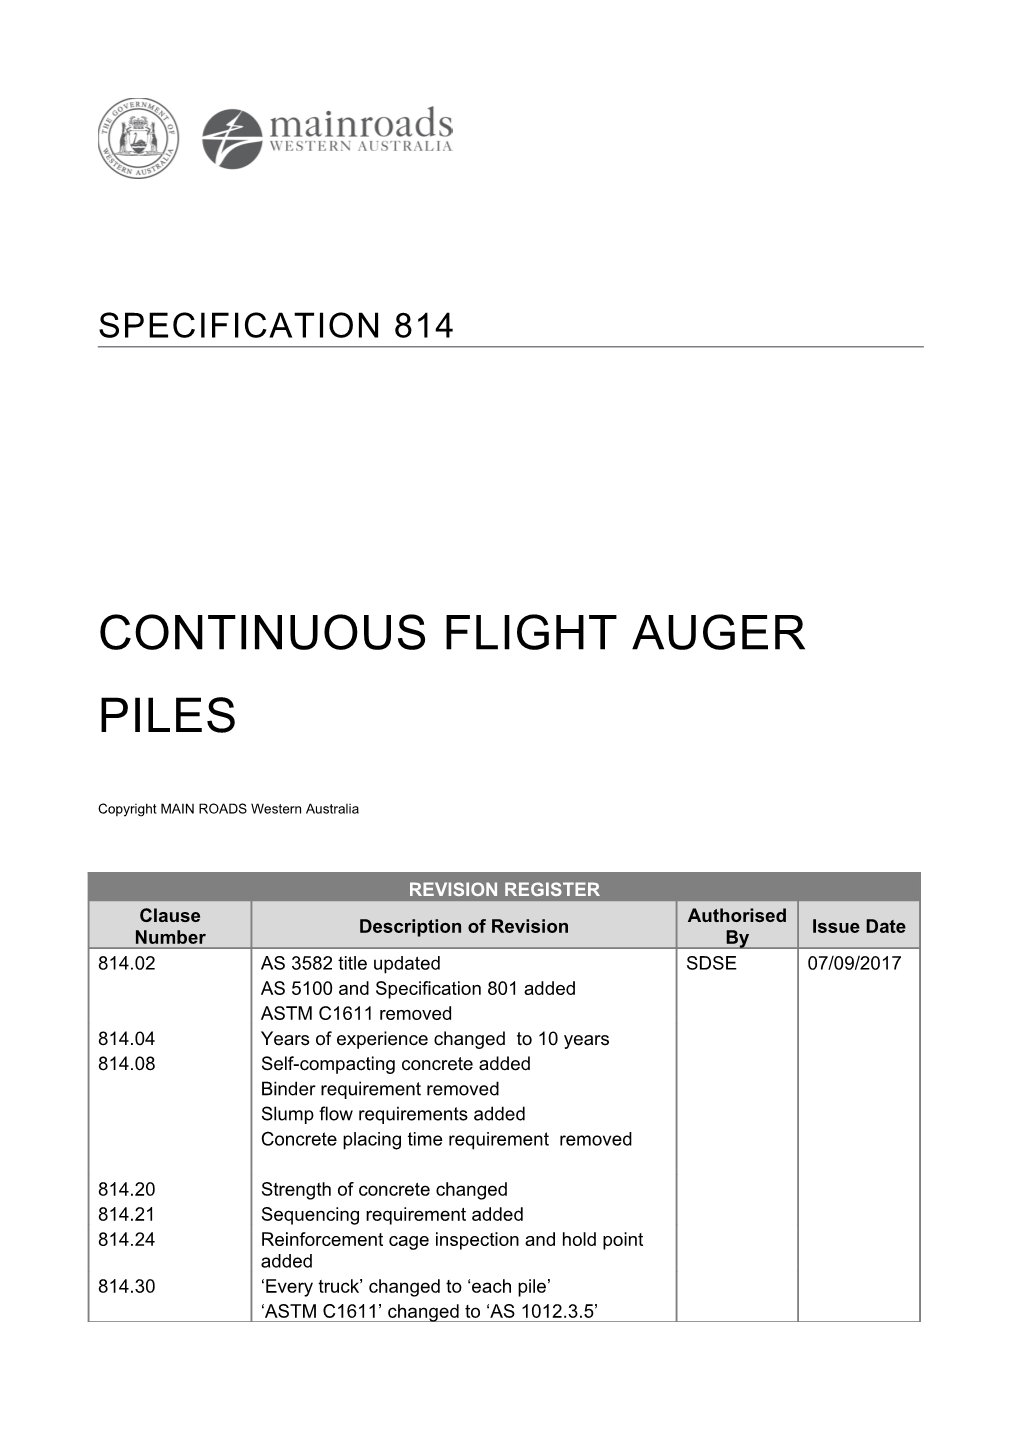 Continuous Flight Auger Piles